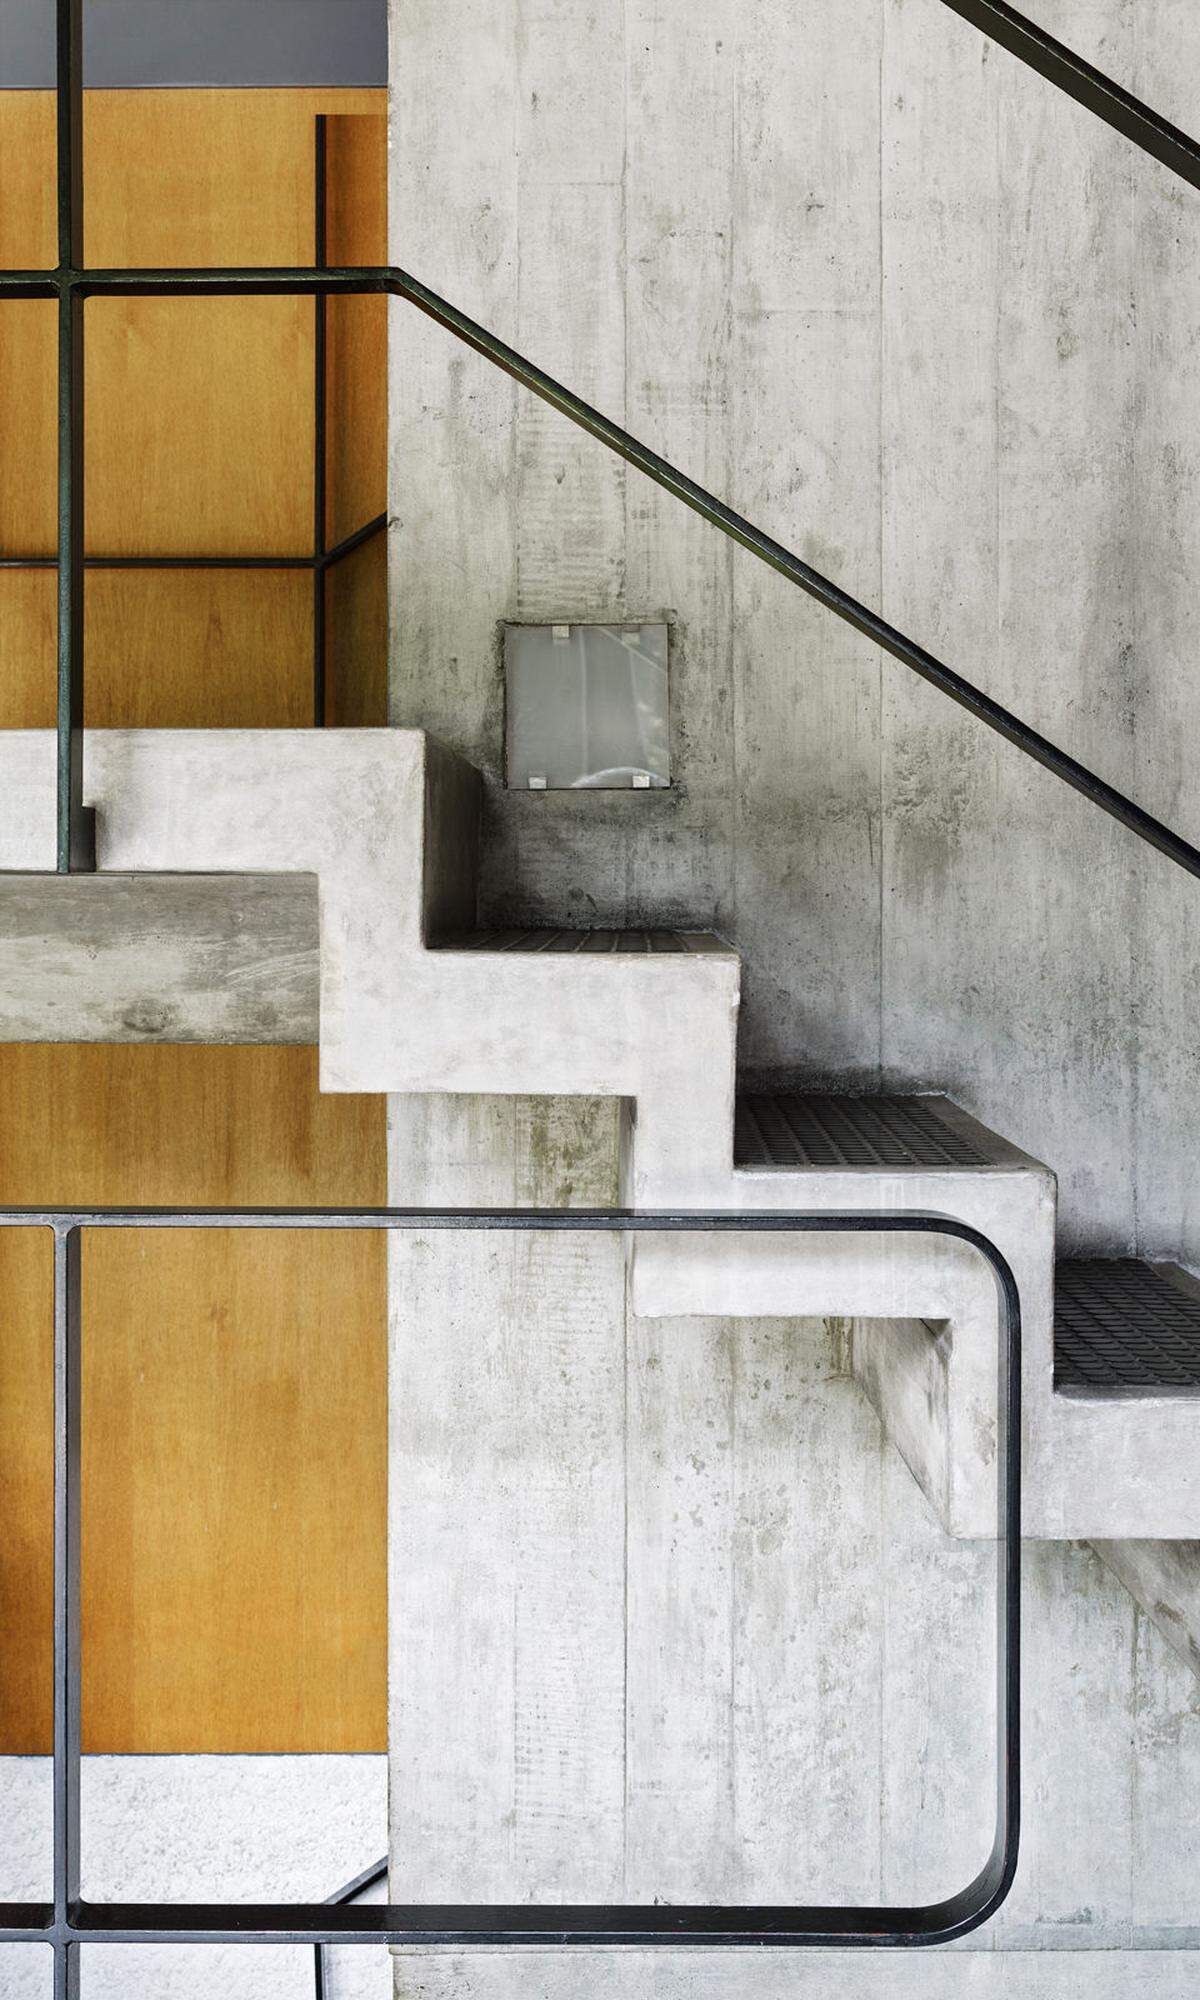 Er sollte zu einer Art Vermächtnis der Architektenlegende werden. Für Le Corbusier war dieser lichte Pavillon das „Kühnste", das er je gebaut hätte. Für seine Anhänger jedoch schwerer einzuordnen in ein Spätwerk, das mehr von Beton beziehungsweise Brutalismus geprägt war. Architektur. Stringent bis ins Detail, das gilt auch für den Treppenaufgang.